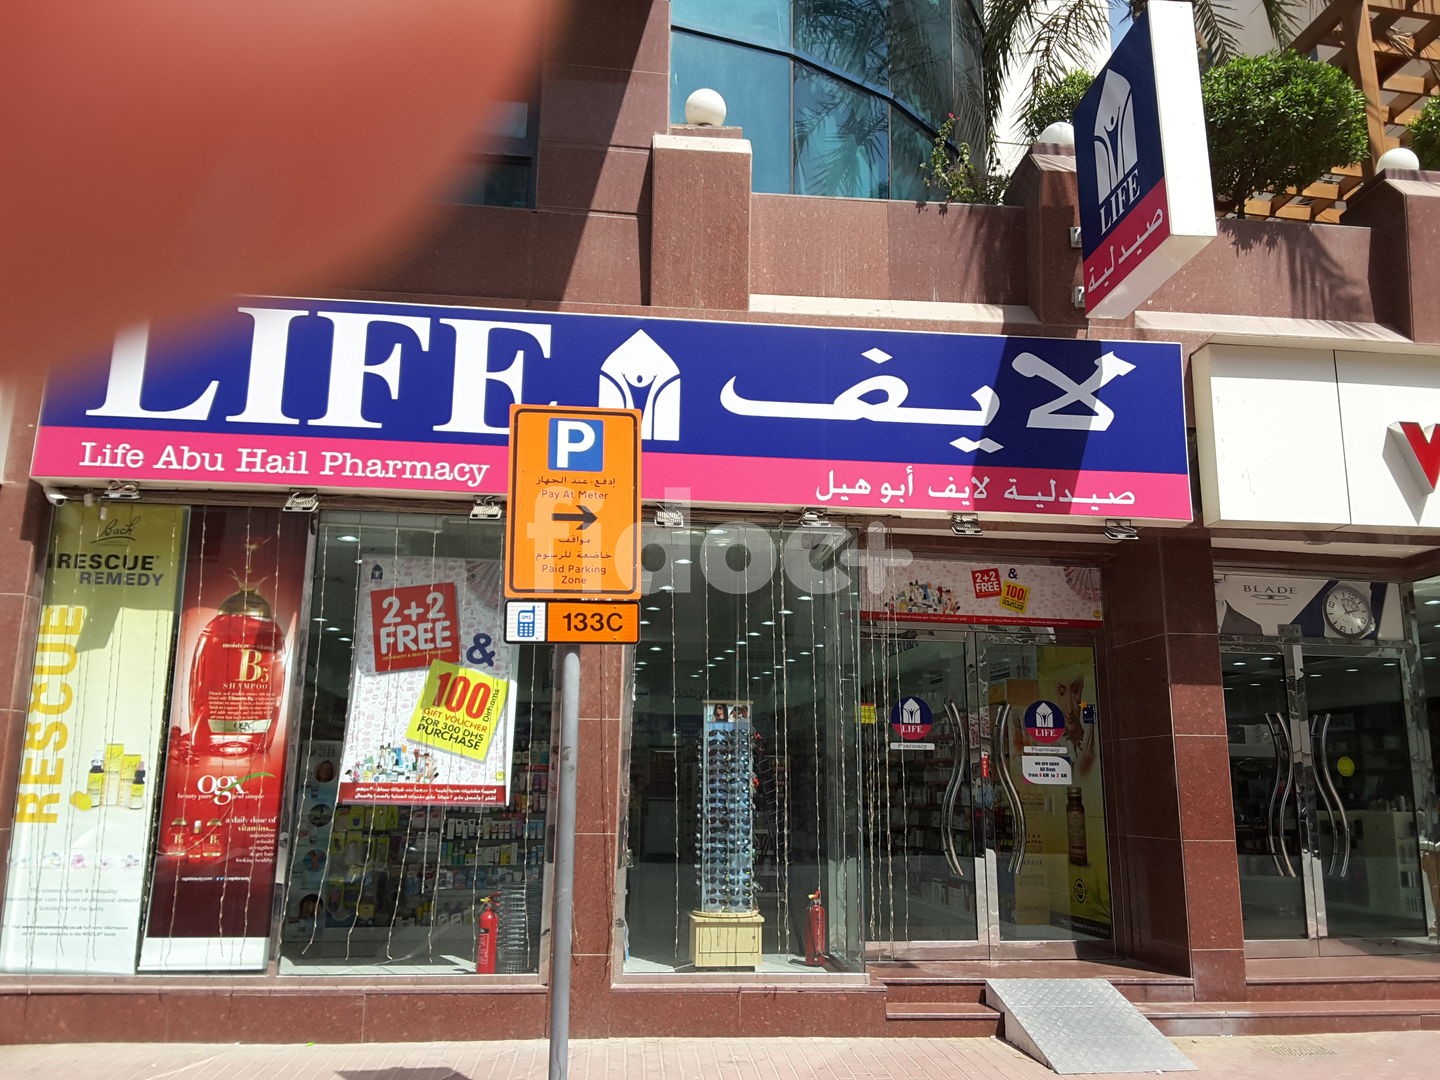 Life Abuhail Pharmacy, Dubai